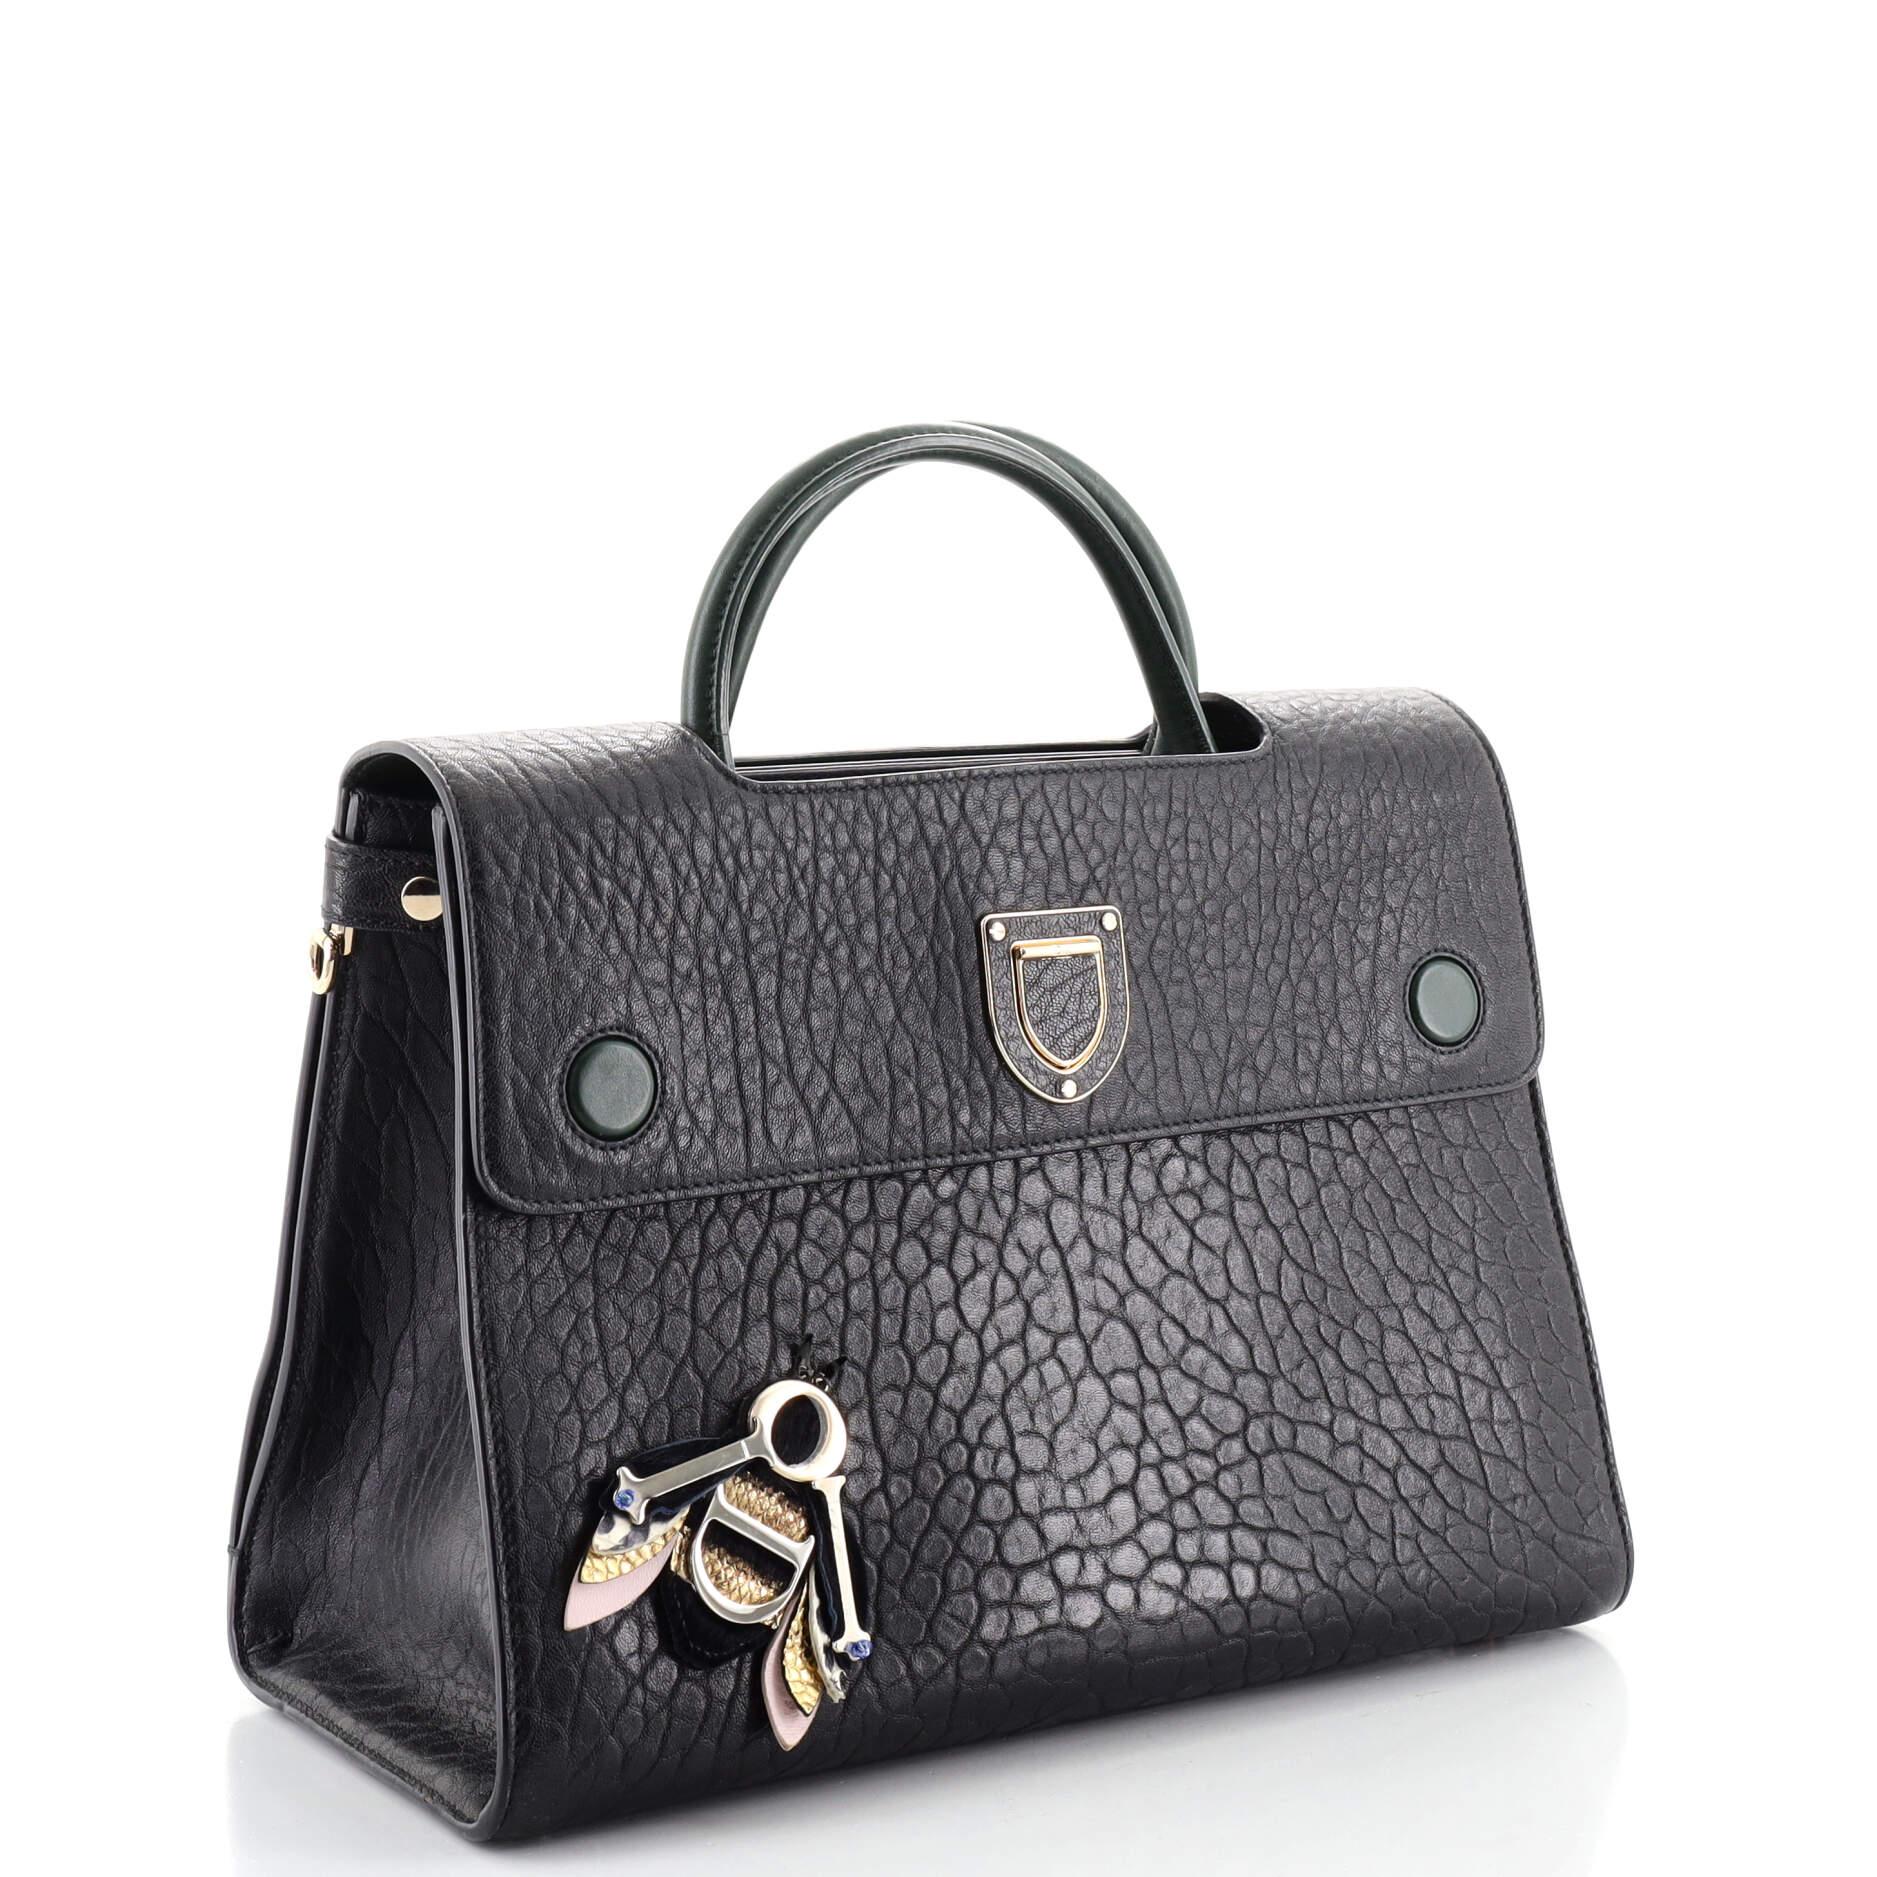 Black Christian Dior Diorever Bag Embellished Leather Medium